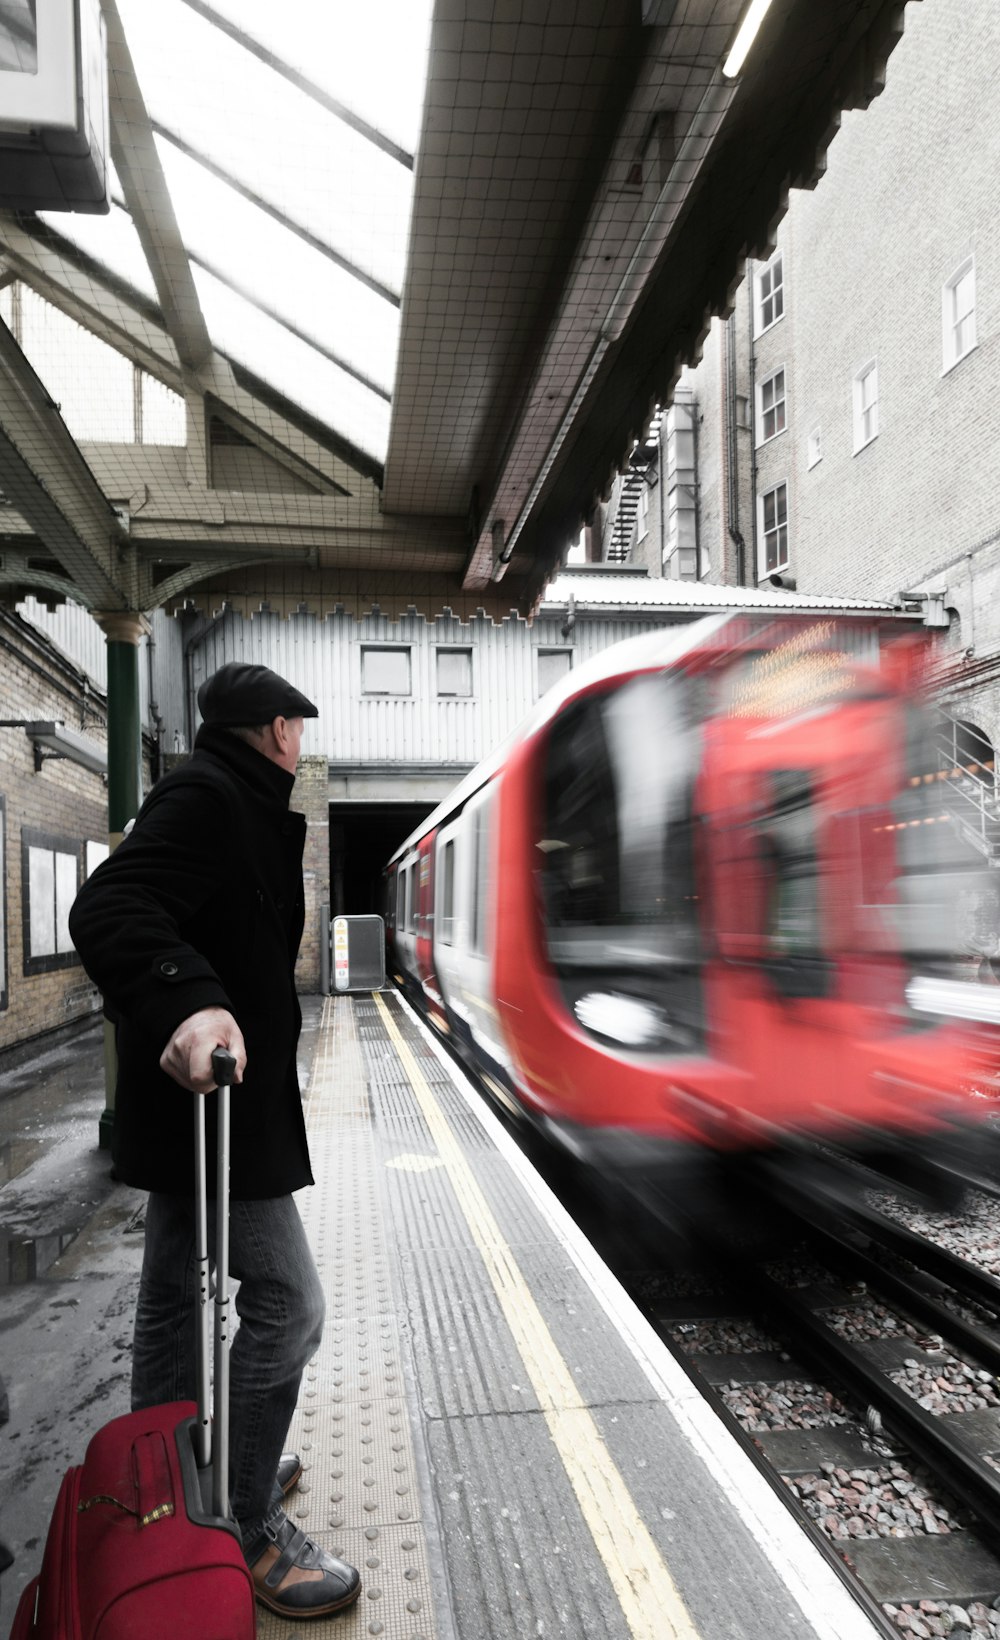 hombre sosteniendo el equipaje esperando en el ferrocarril con el tren rojo que pasa